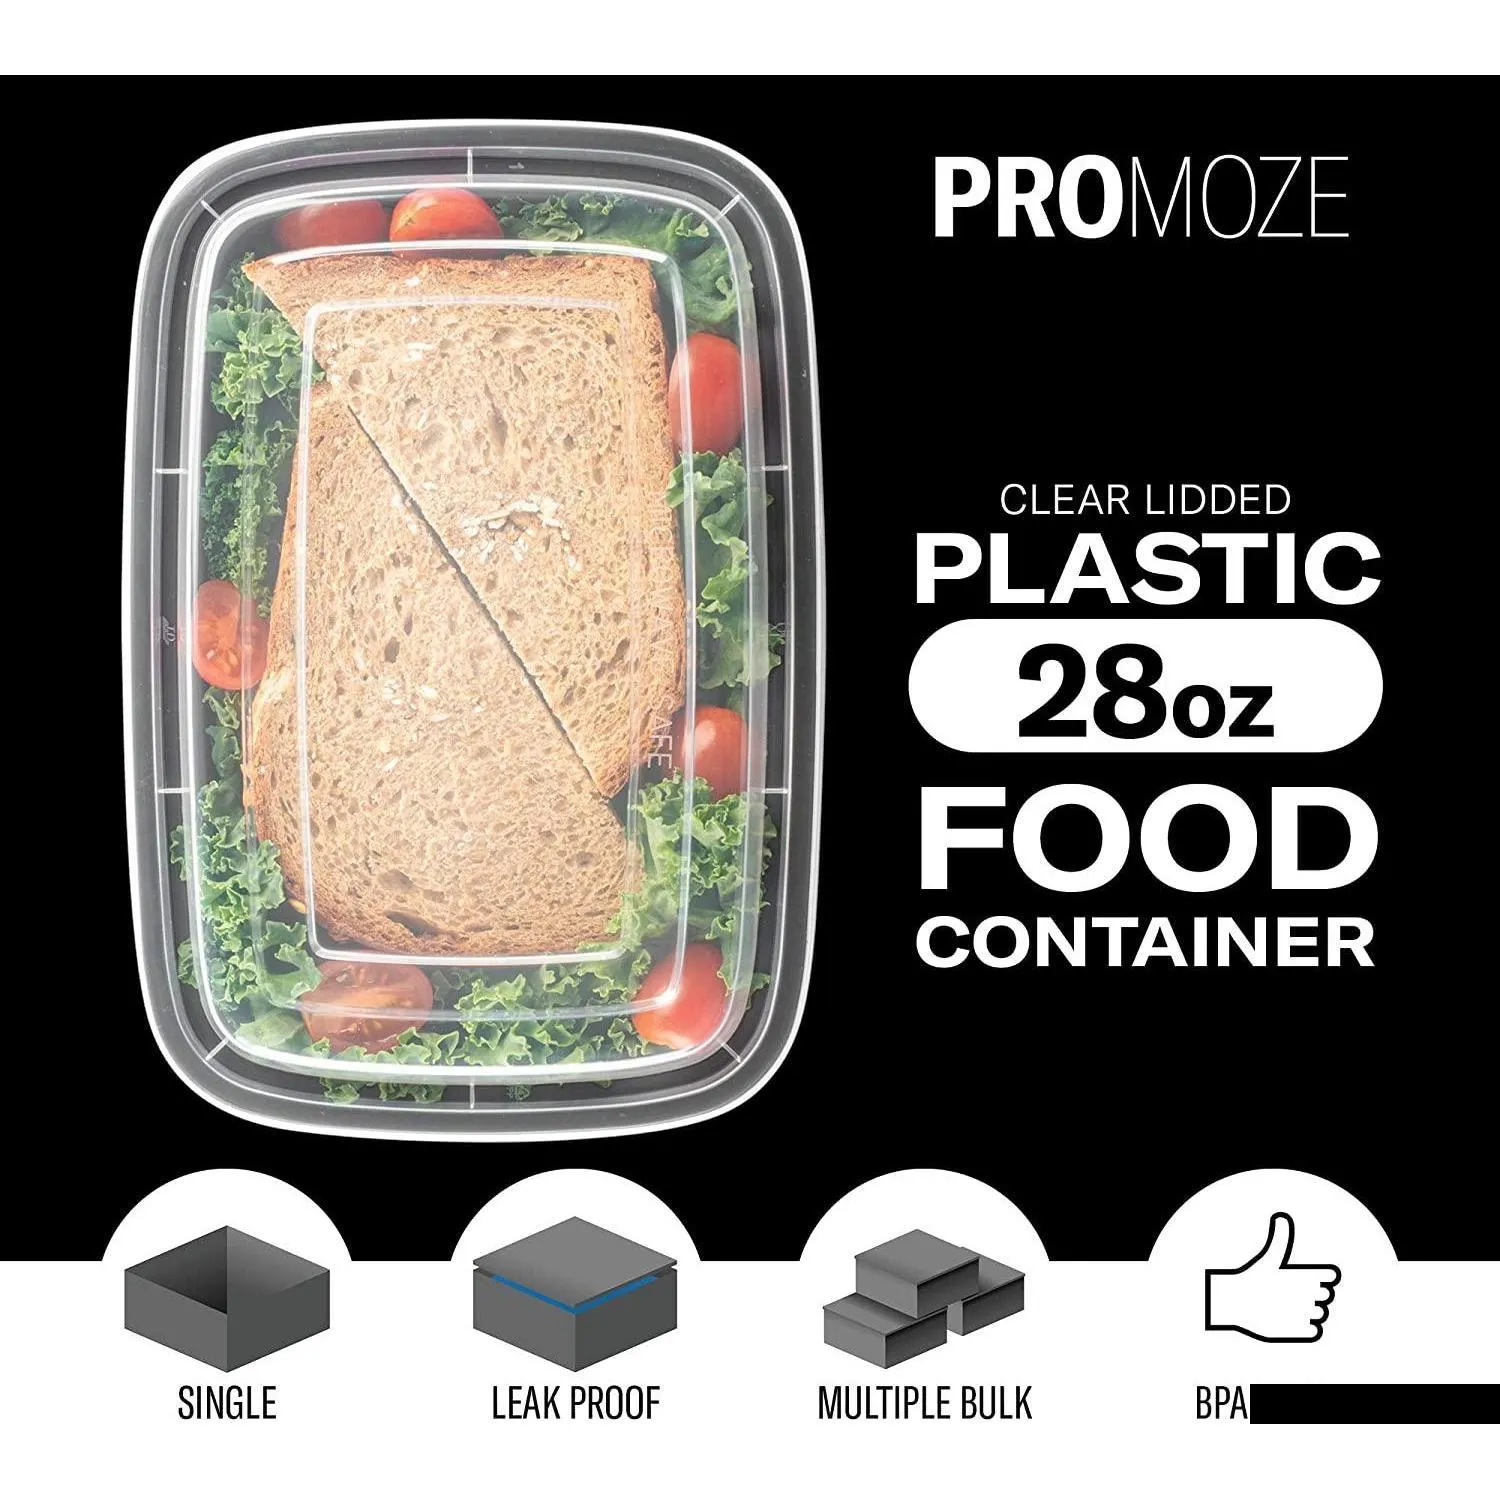 뚜껑 식사 준비 상자 750ml 저렴한 플라스틱 음식 용기 테이크 아웃 전자 레인지 FT7J